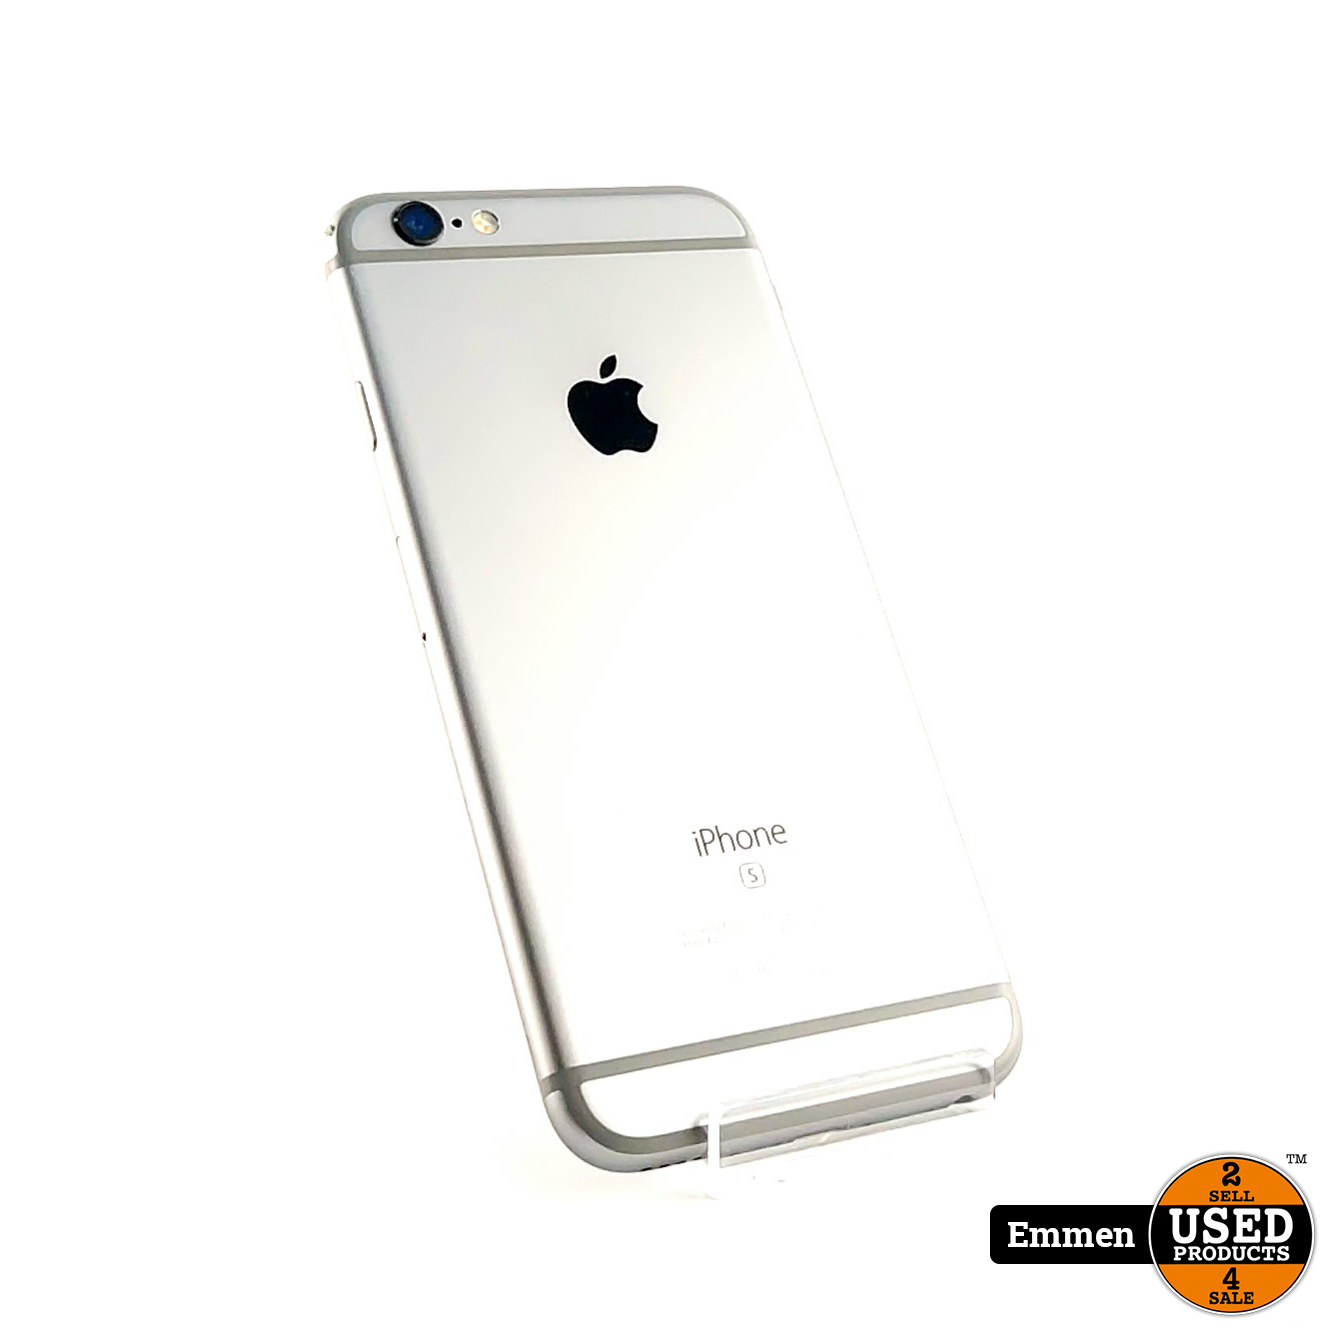 iPhone 6s 32GB Gray/Grijs | In Nette Staat - Products Emmen